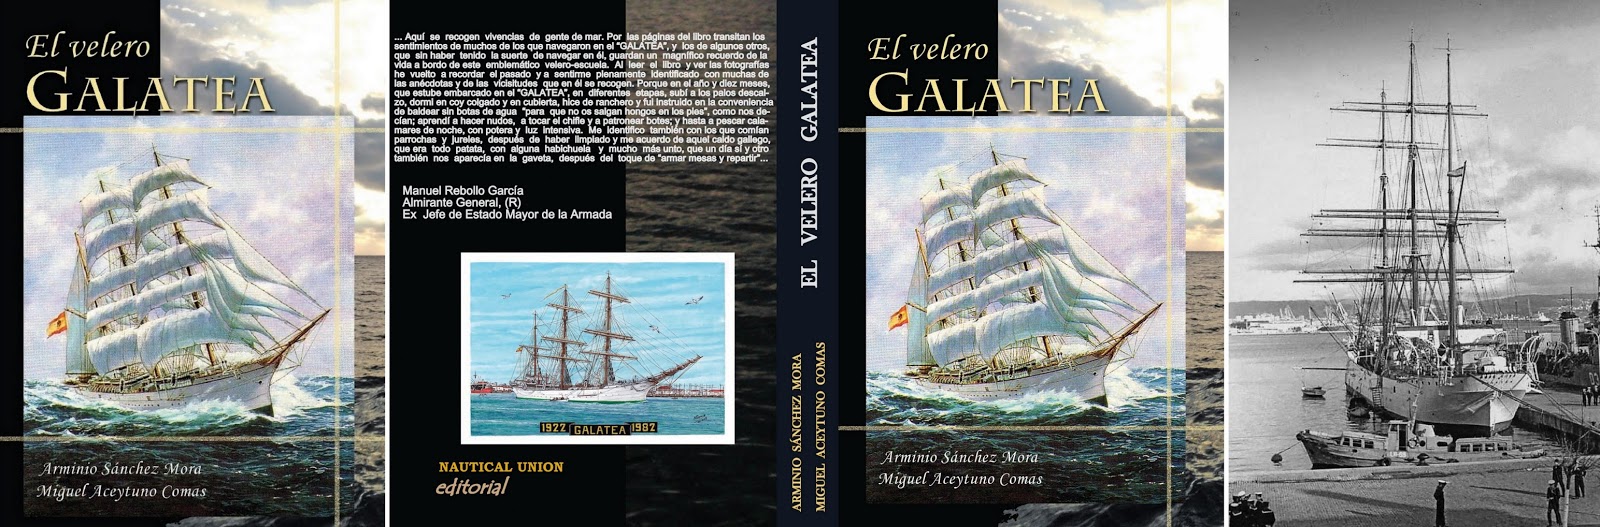 Presentación de libro  "El velero Galatea"